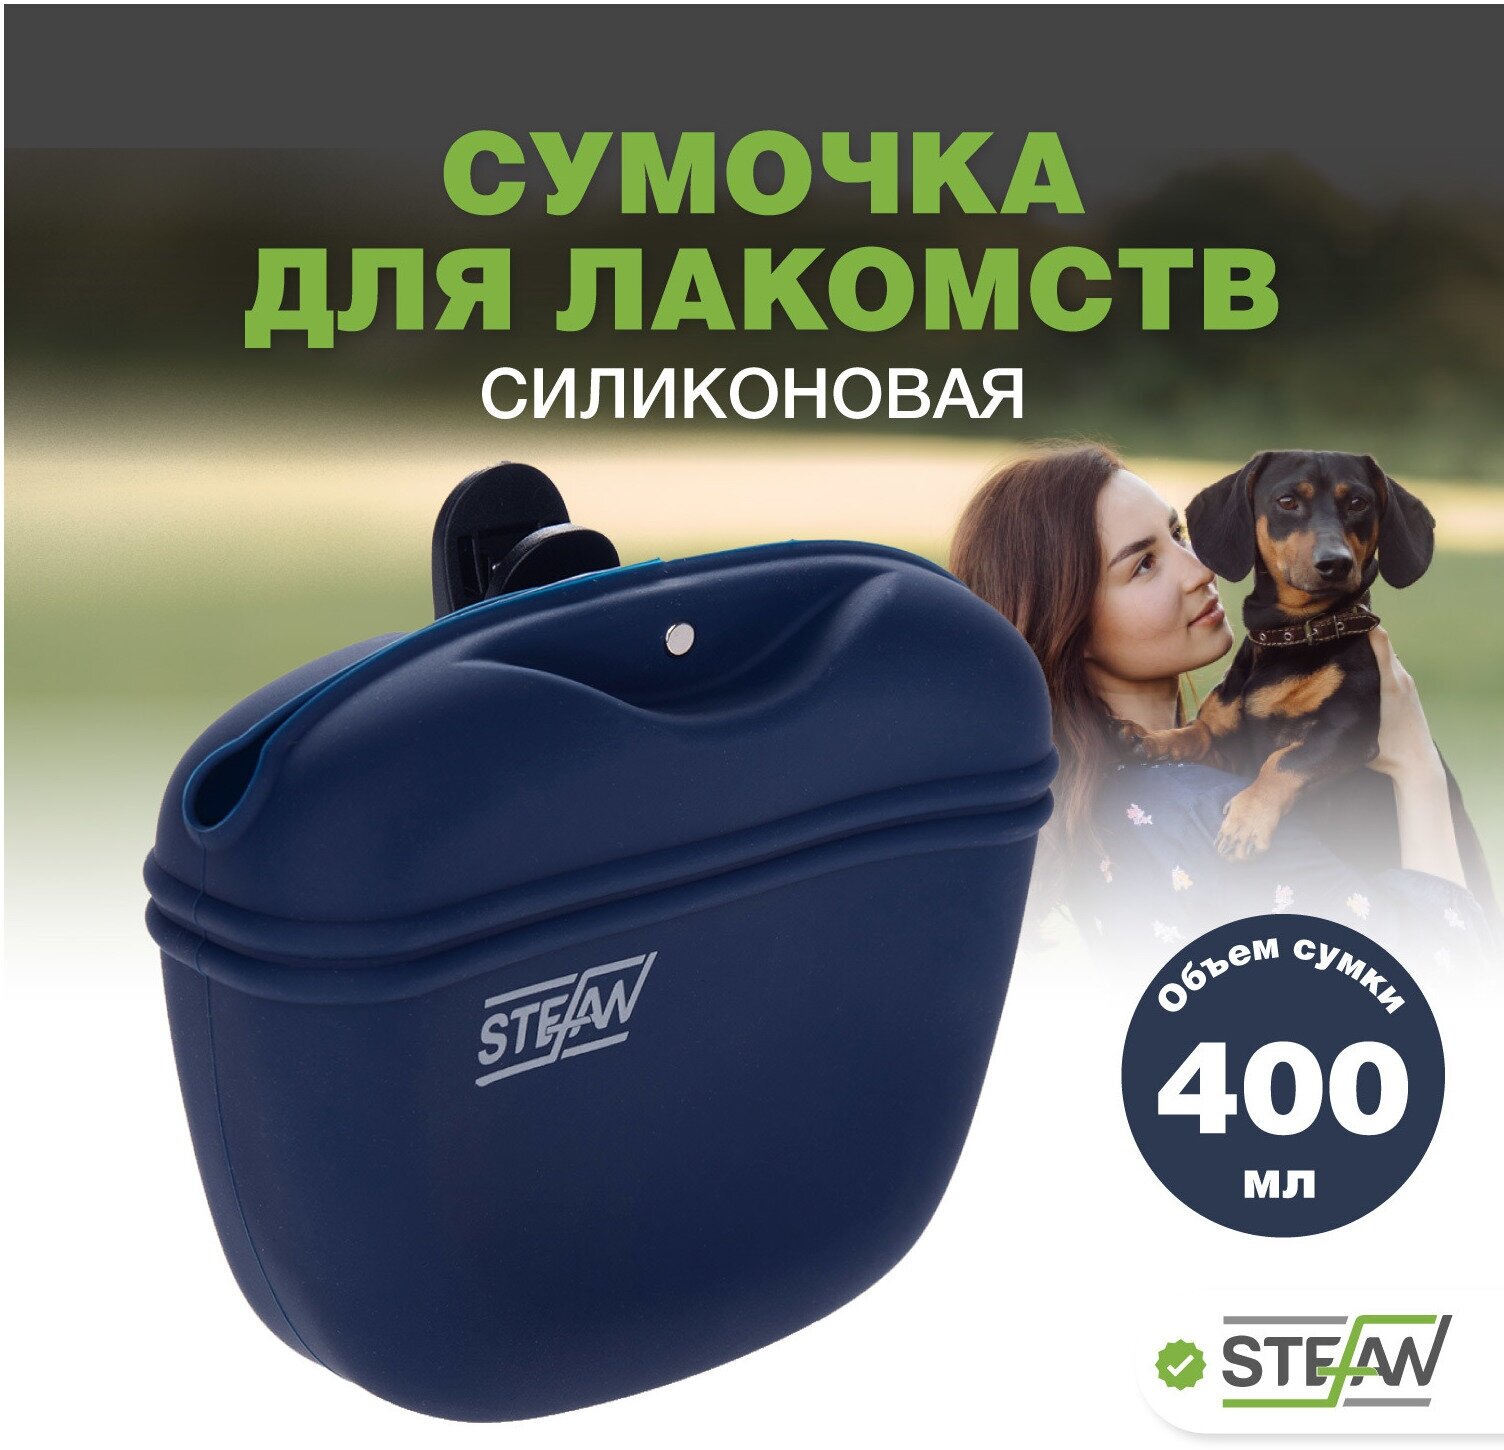 Сумочка для лакомств и корма силиконовая STEFAN (Штефан) для прогулок и дрессировки собак, синий, WF37718